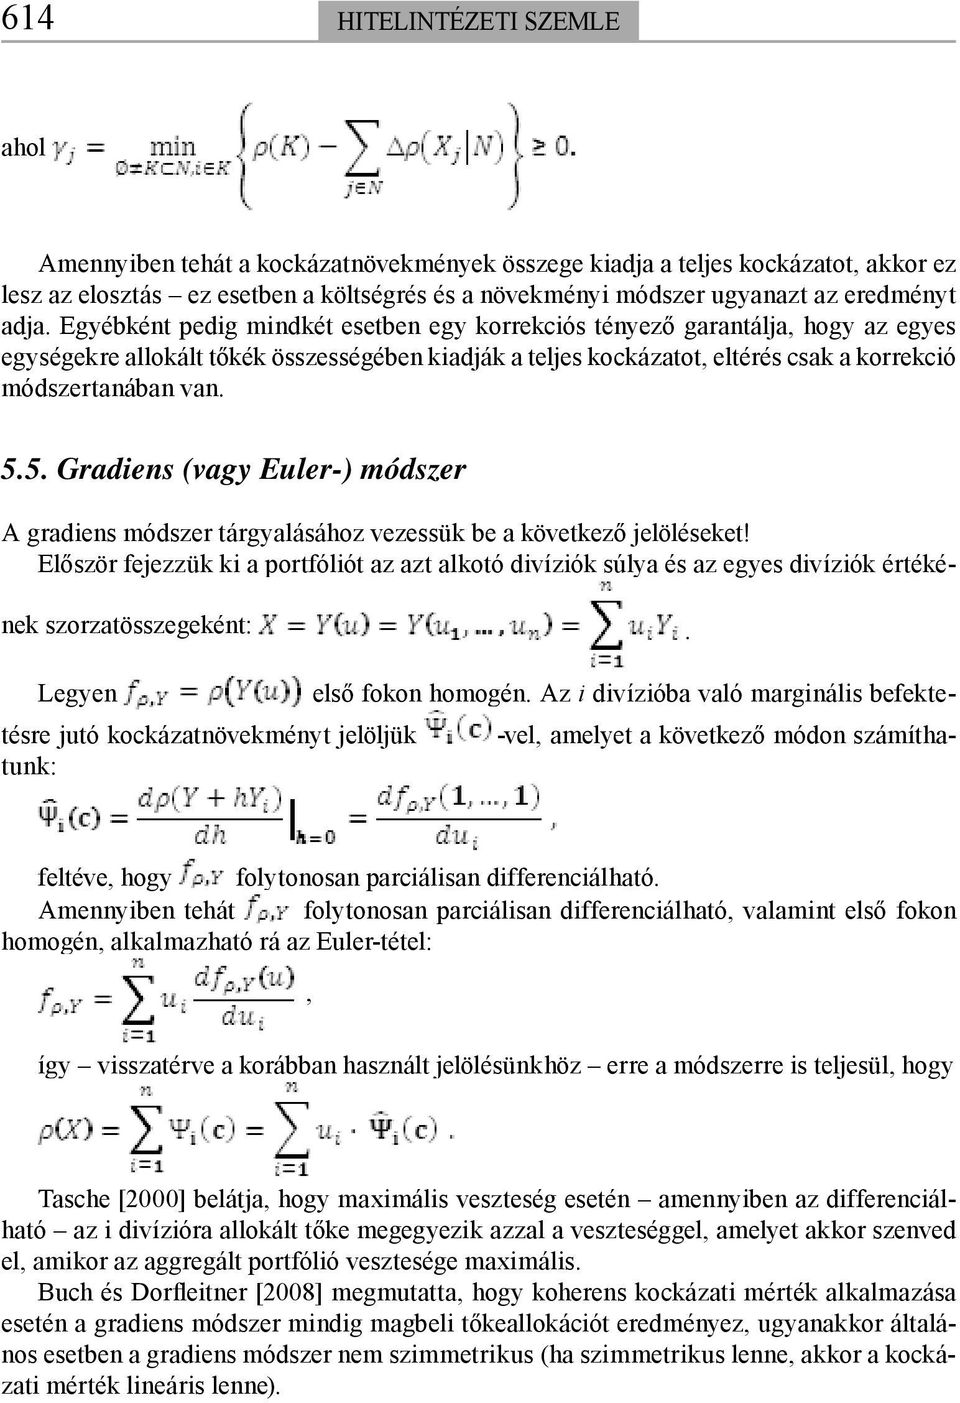 5. Gradiens (vagy Euler-) módszer A gradiens módszer tárgyalásához vezessük be a következő jelöléseket!